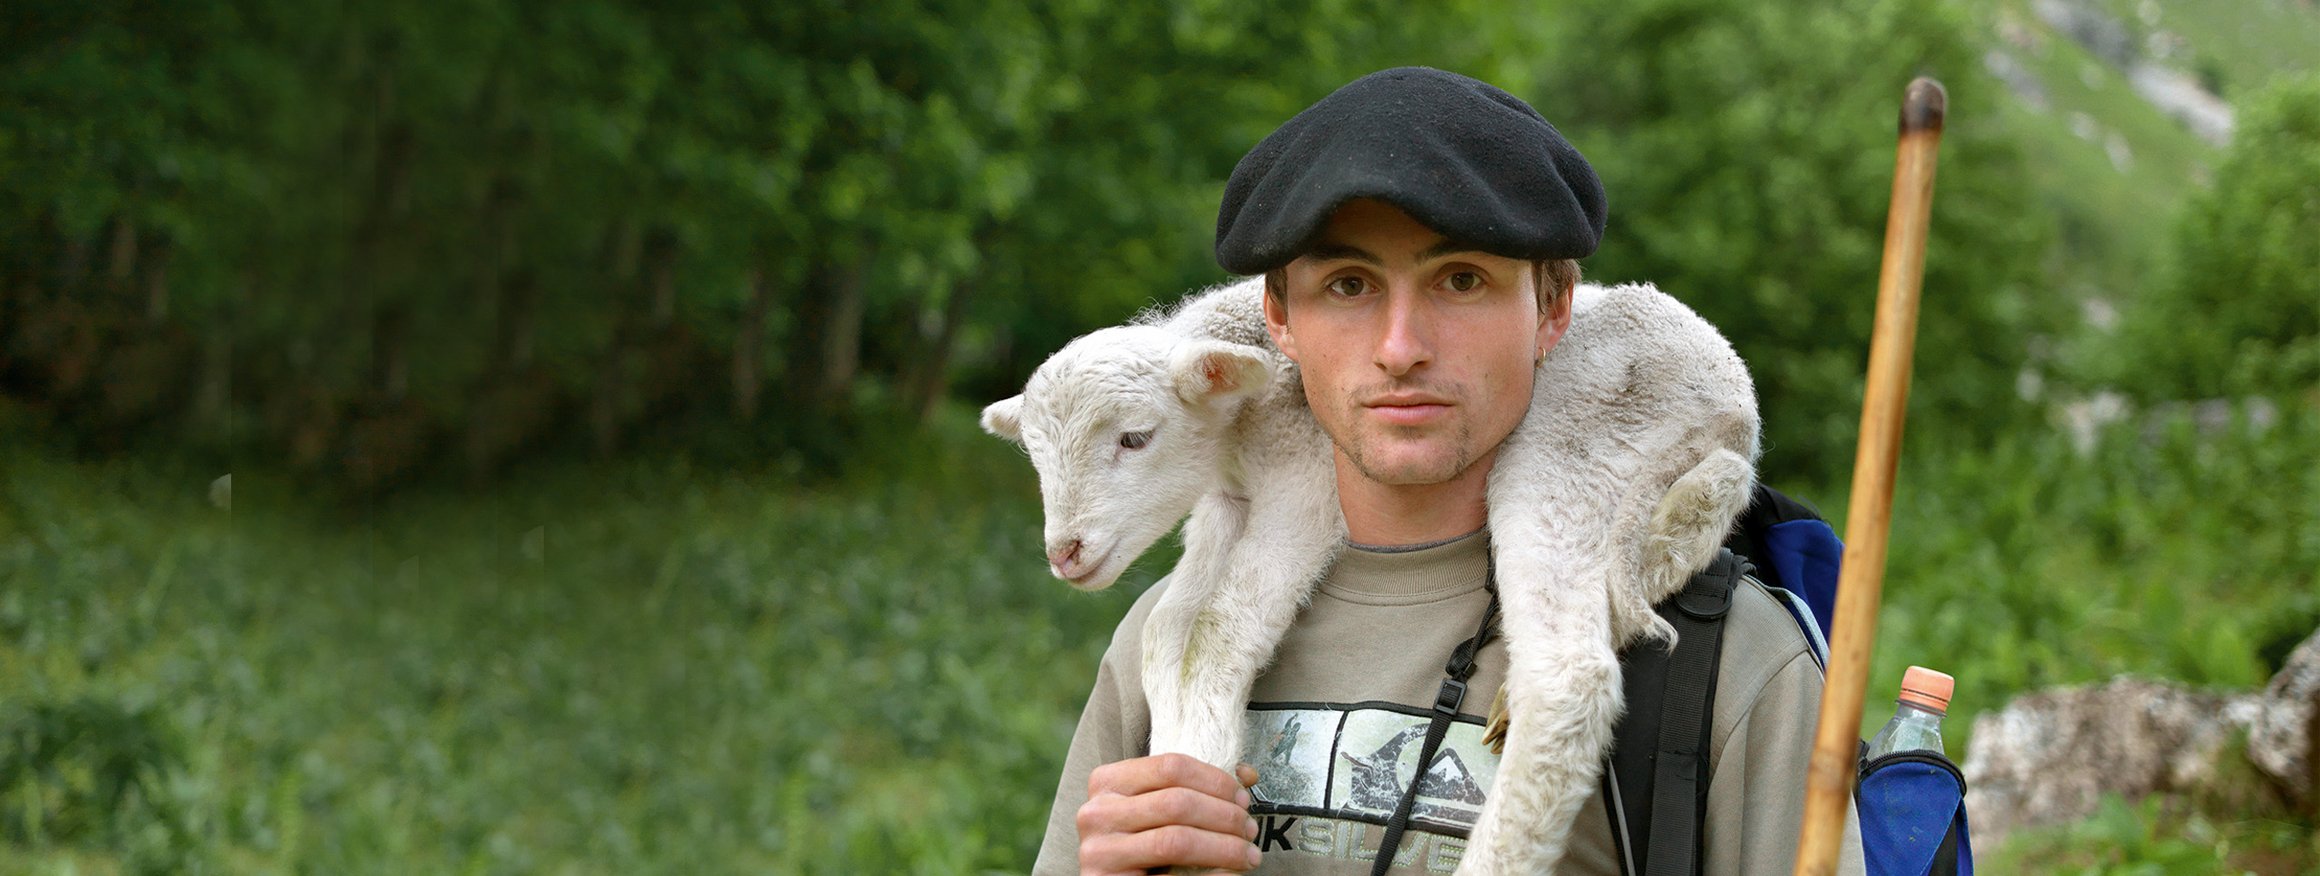 Ein junger Mann mit Baskenmütze auf dem Kopf, steht mit seinem Schäferstab auf der Wiese und trägt dabei ein weißes Lamm auf den Schultern